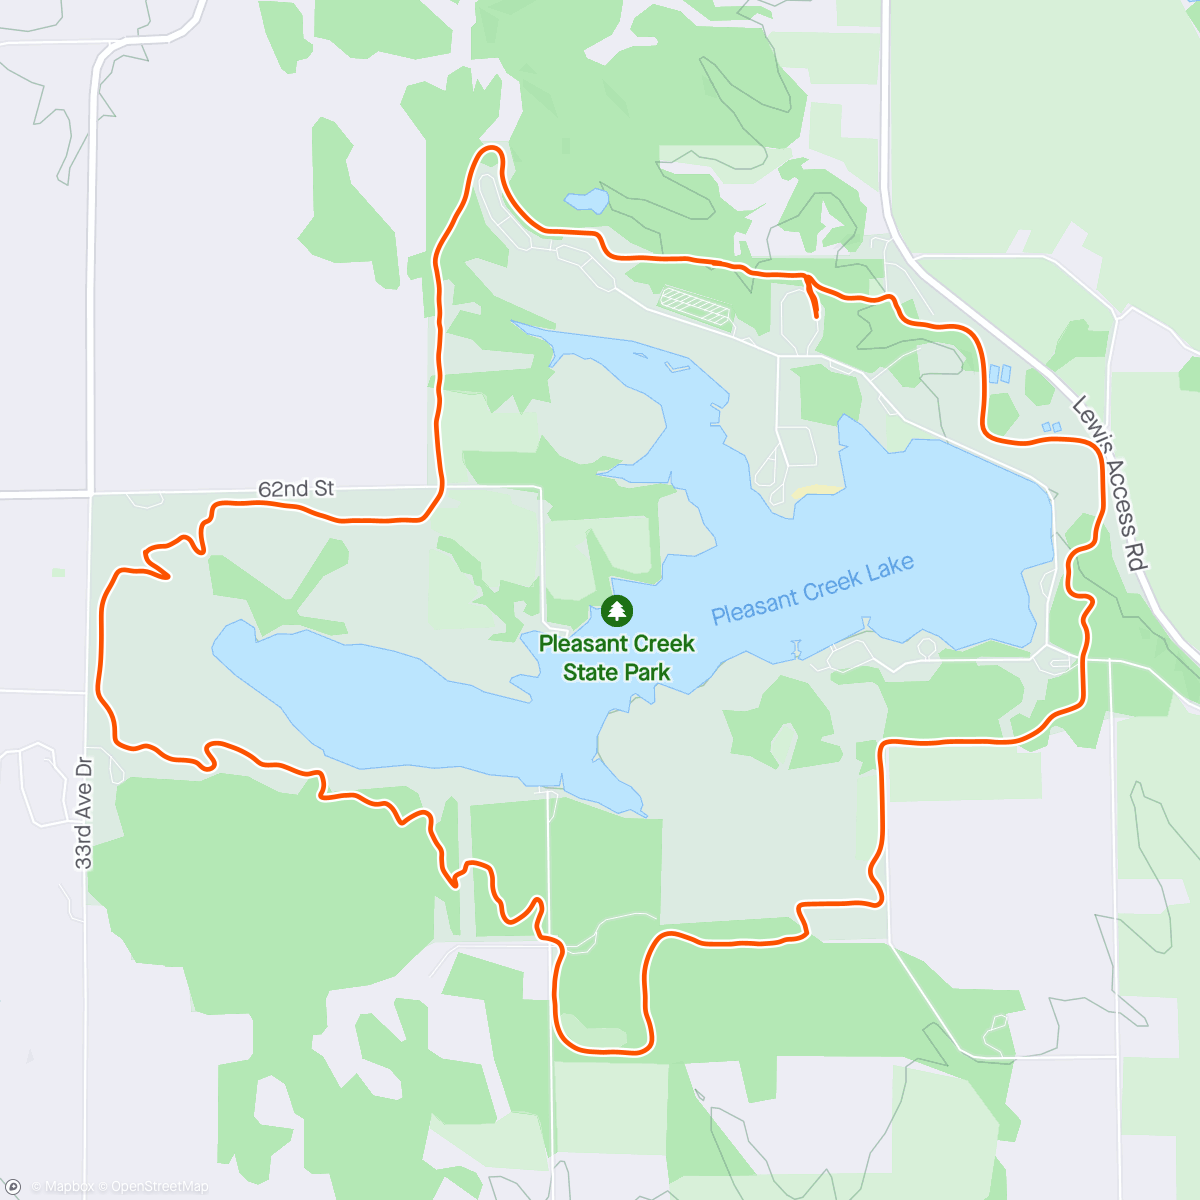 「Pleasant Creek State Park run/walk/hike」活動的地圖